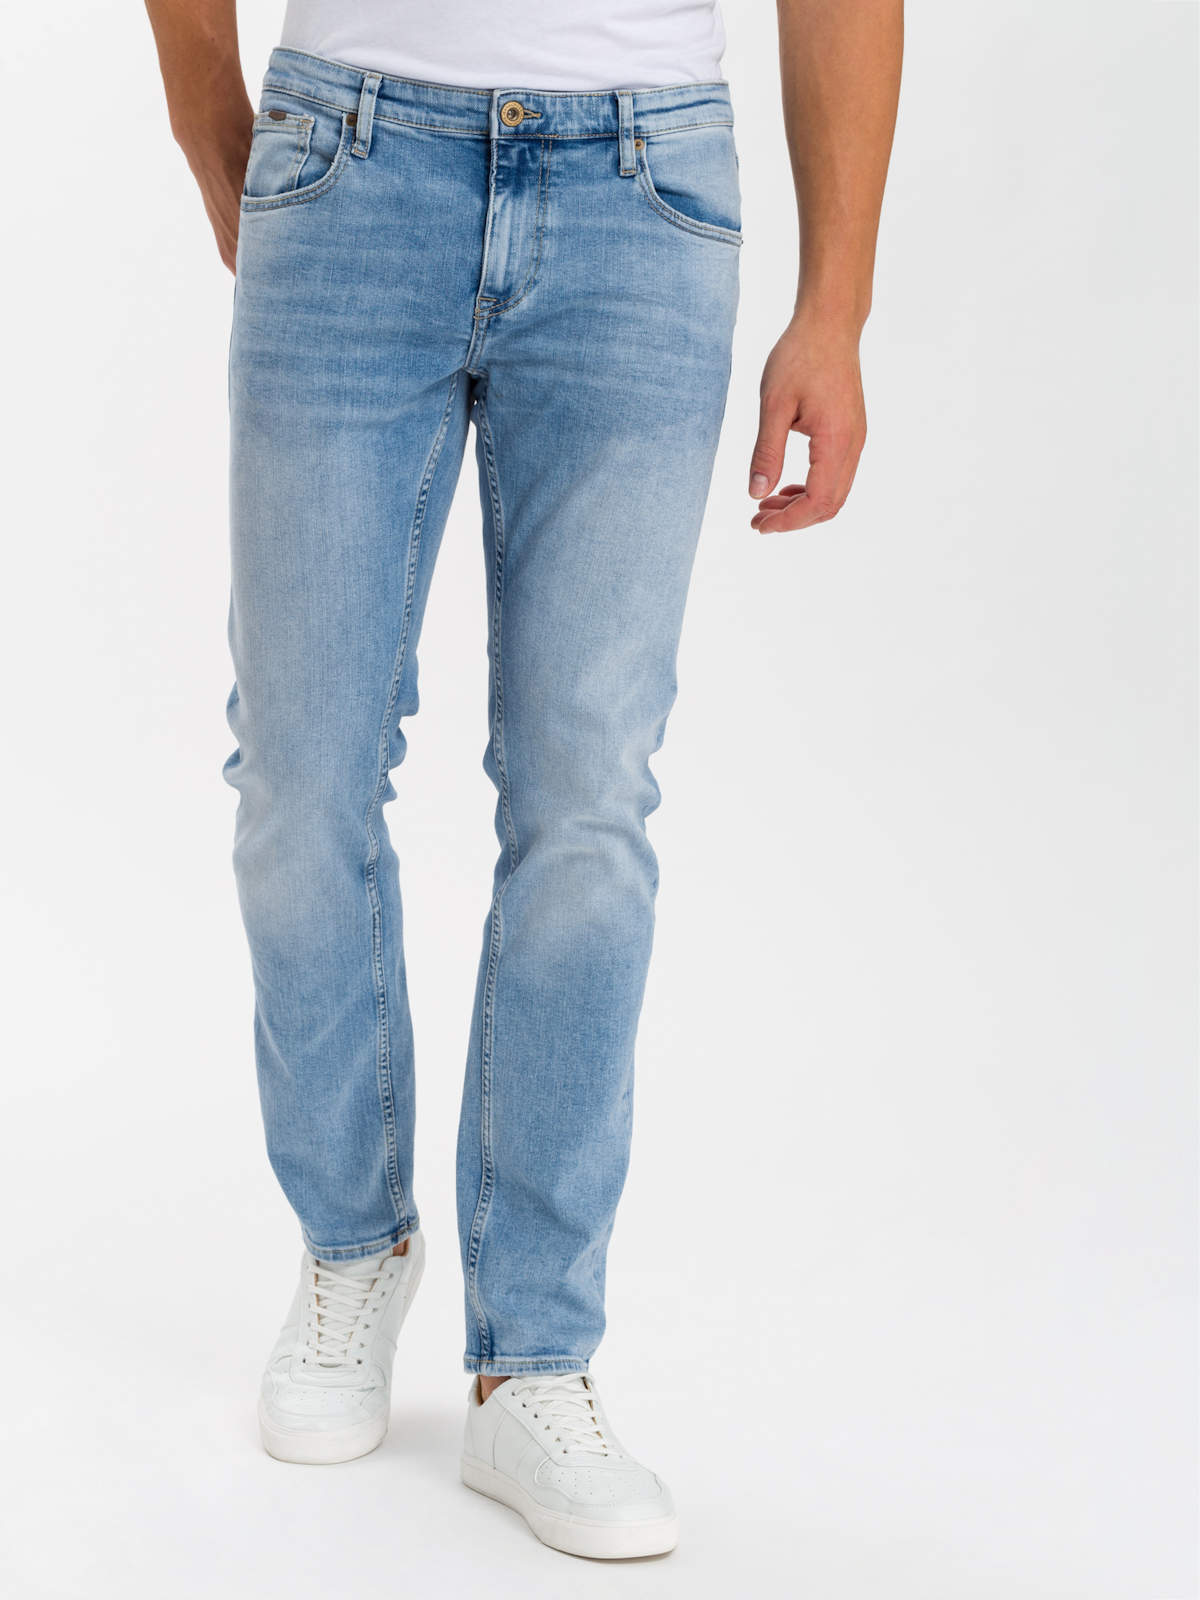 Herren Damien E198-015 Jeans Slim Fit Reg Waist Straight Leg Cross